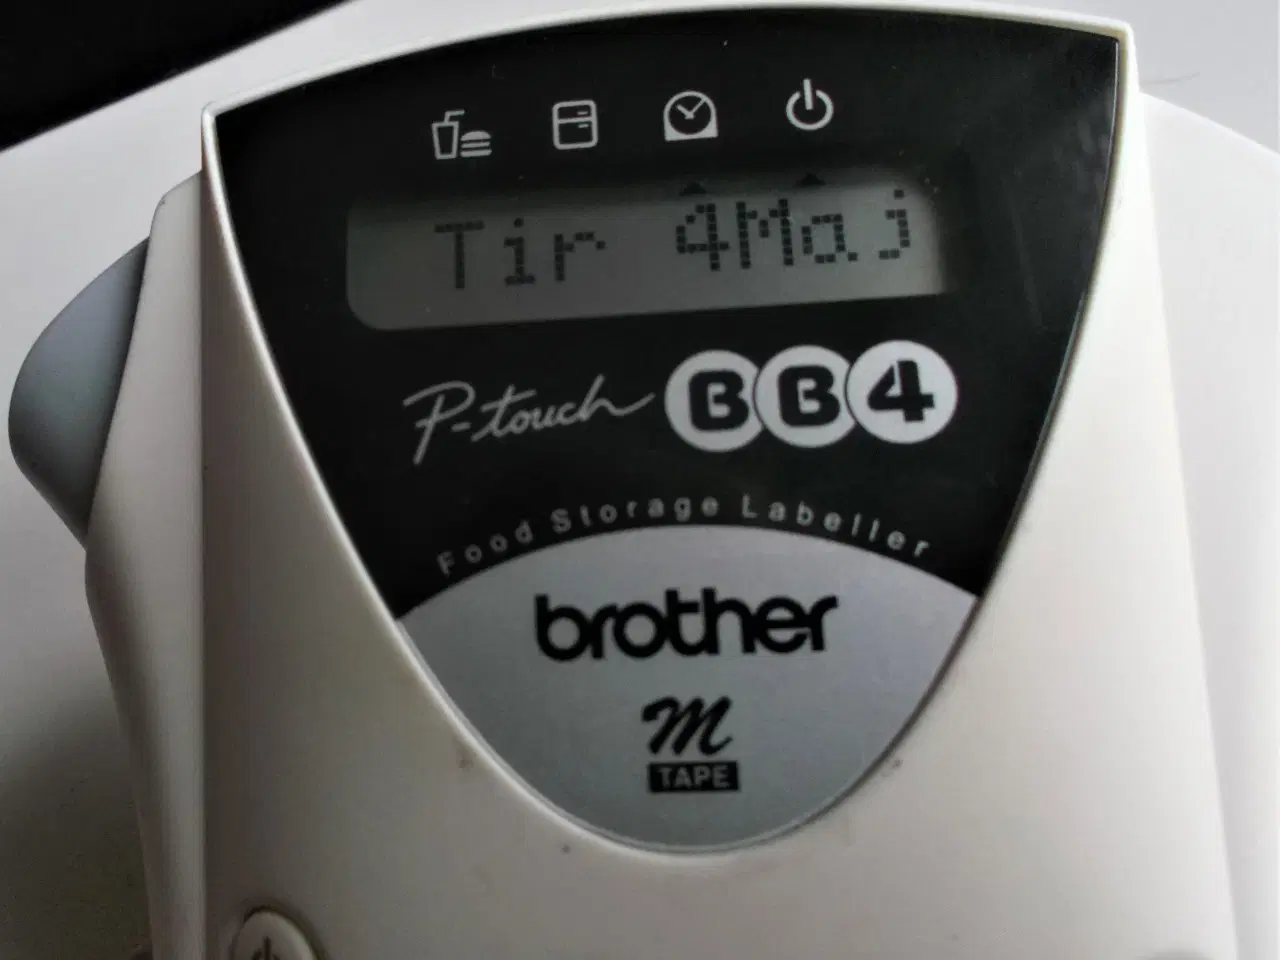 Billede 1 - Brother P-touch BB4 fødevare label printer